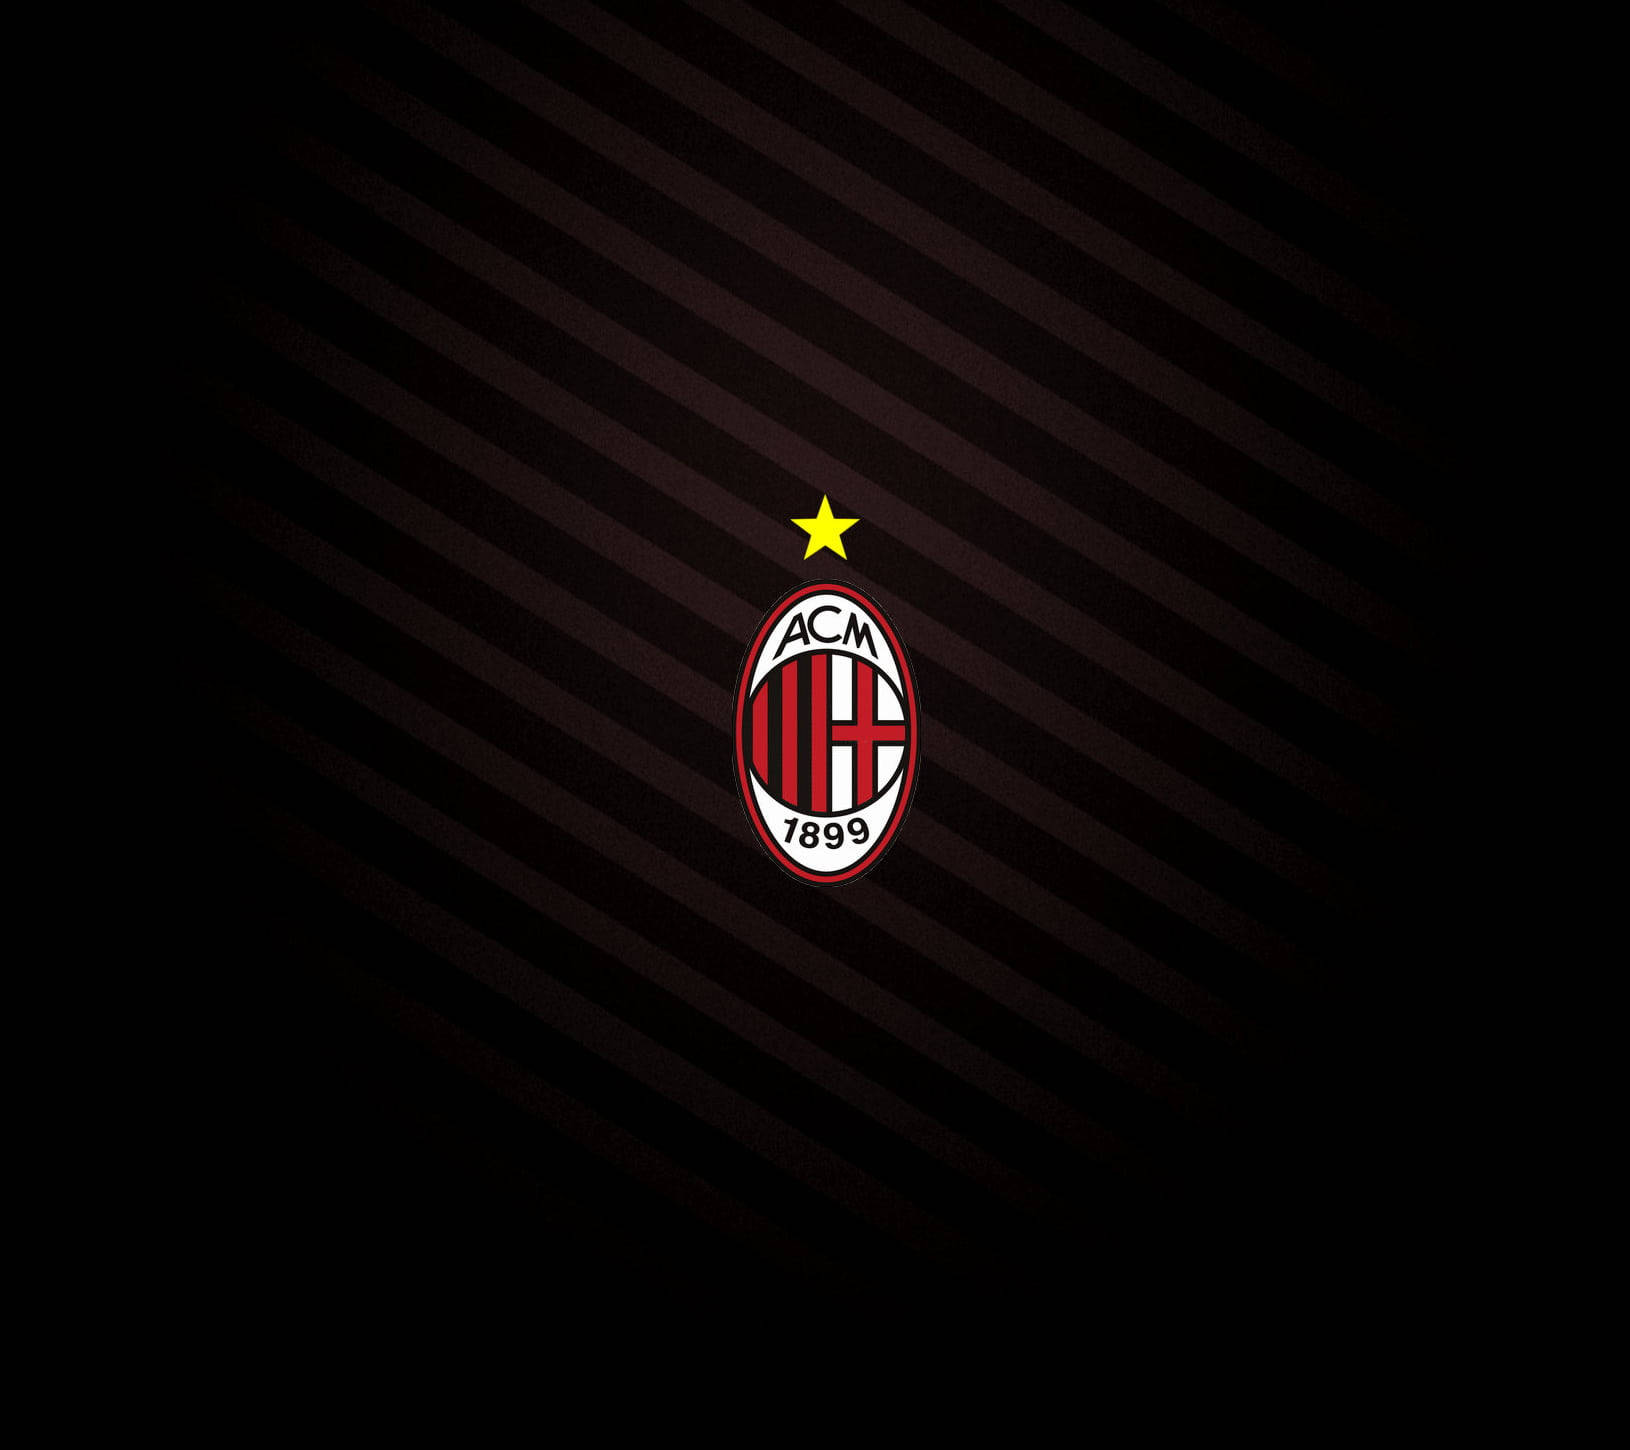 Ac Milan Logo With Star